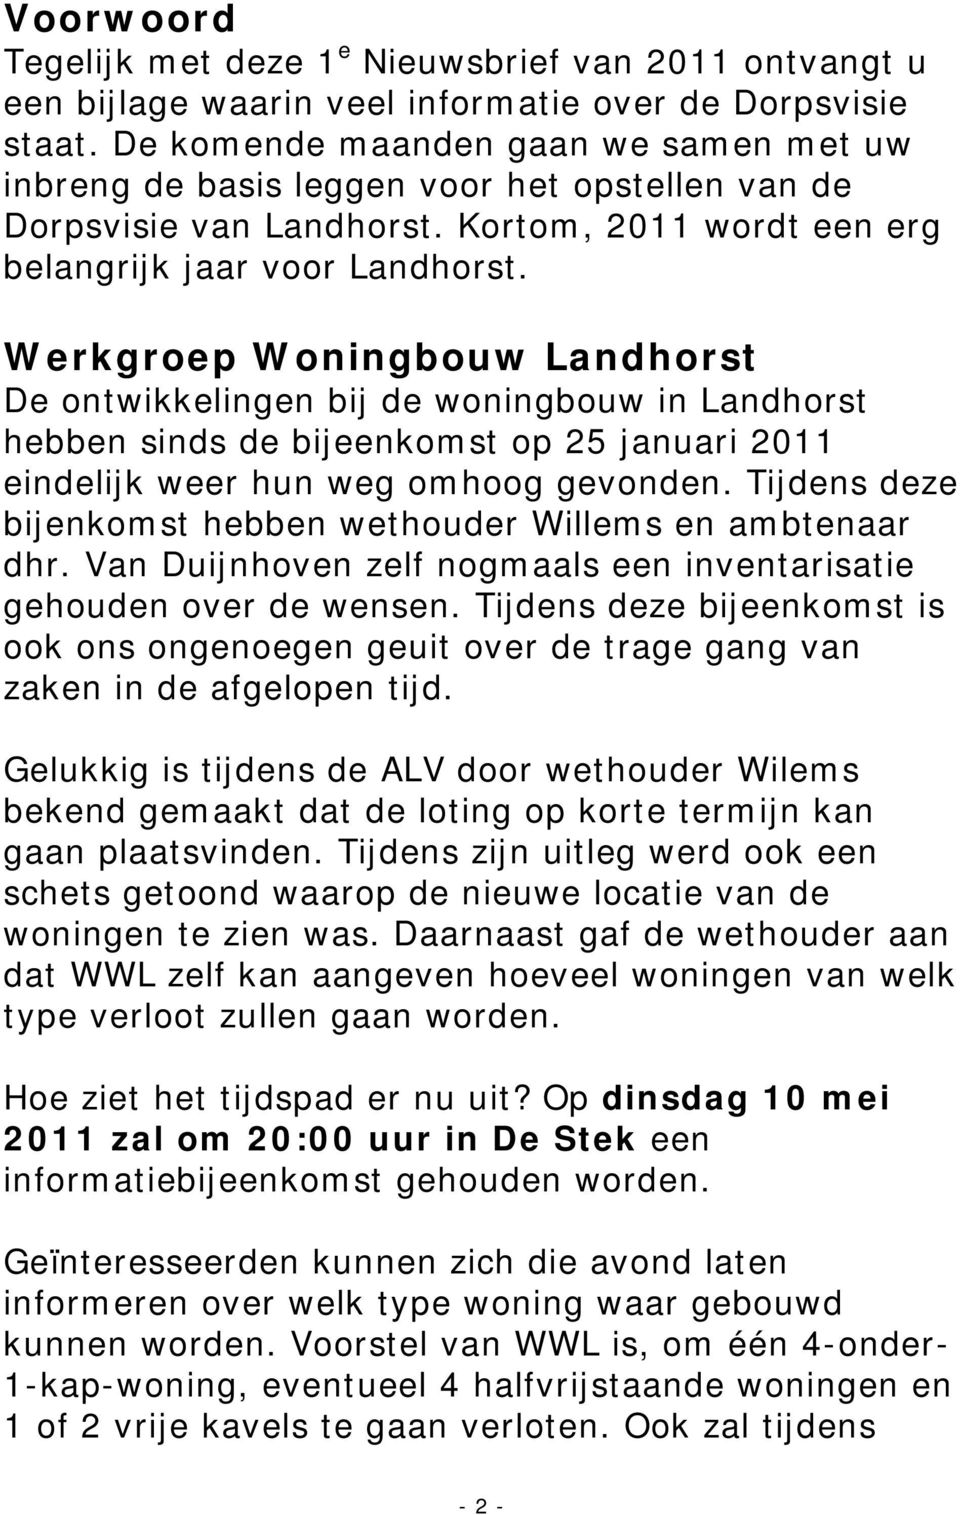 Werkgroep Woningbouw Landhorst De ontwikkelingen bij de woningbouw in Landhorst hebben sinds de bijeenkomst op 25 januari 2011 eindelijk weer hun weg omhoog gevonden.